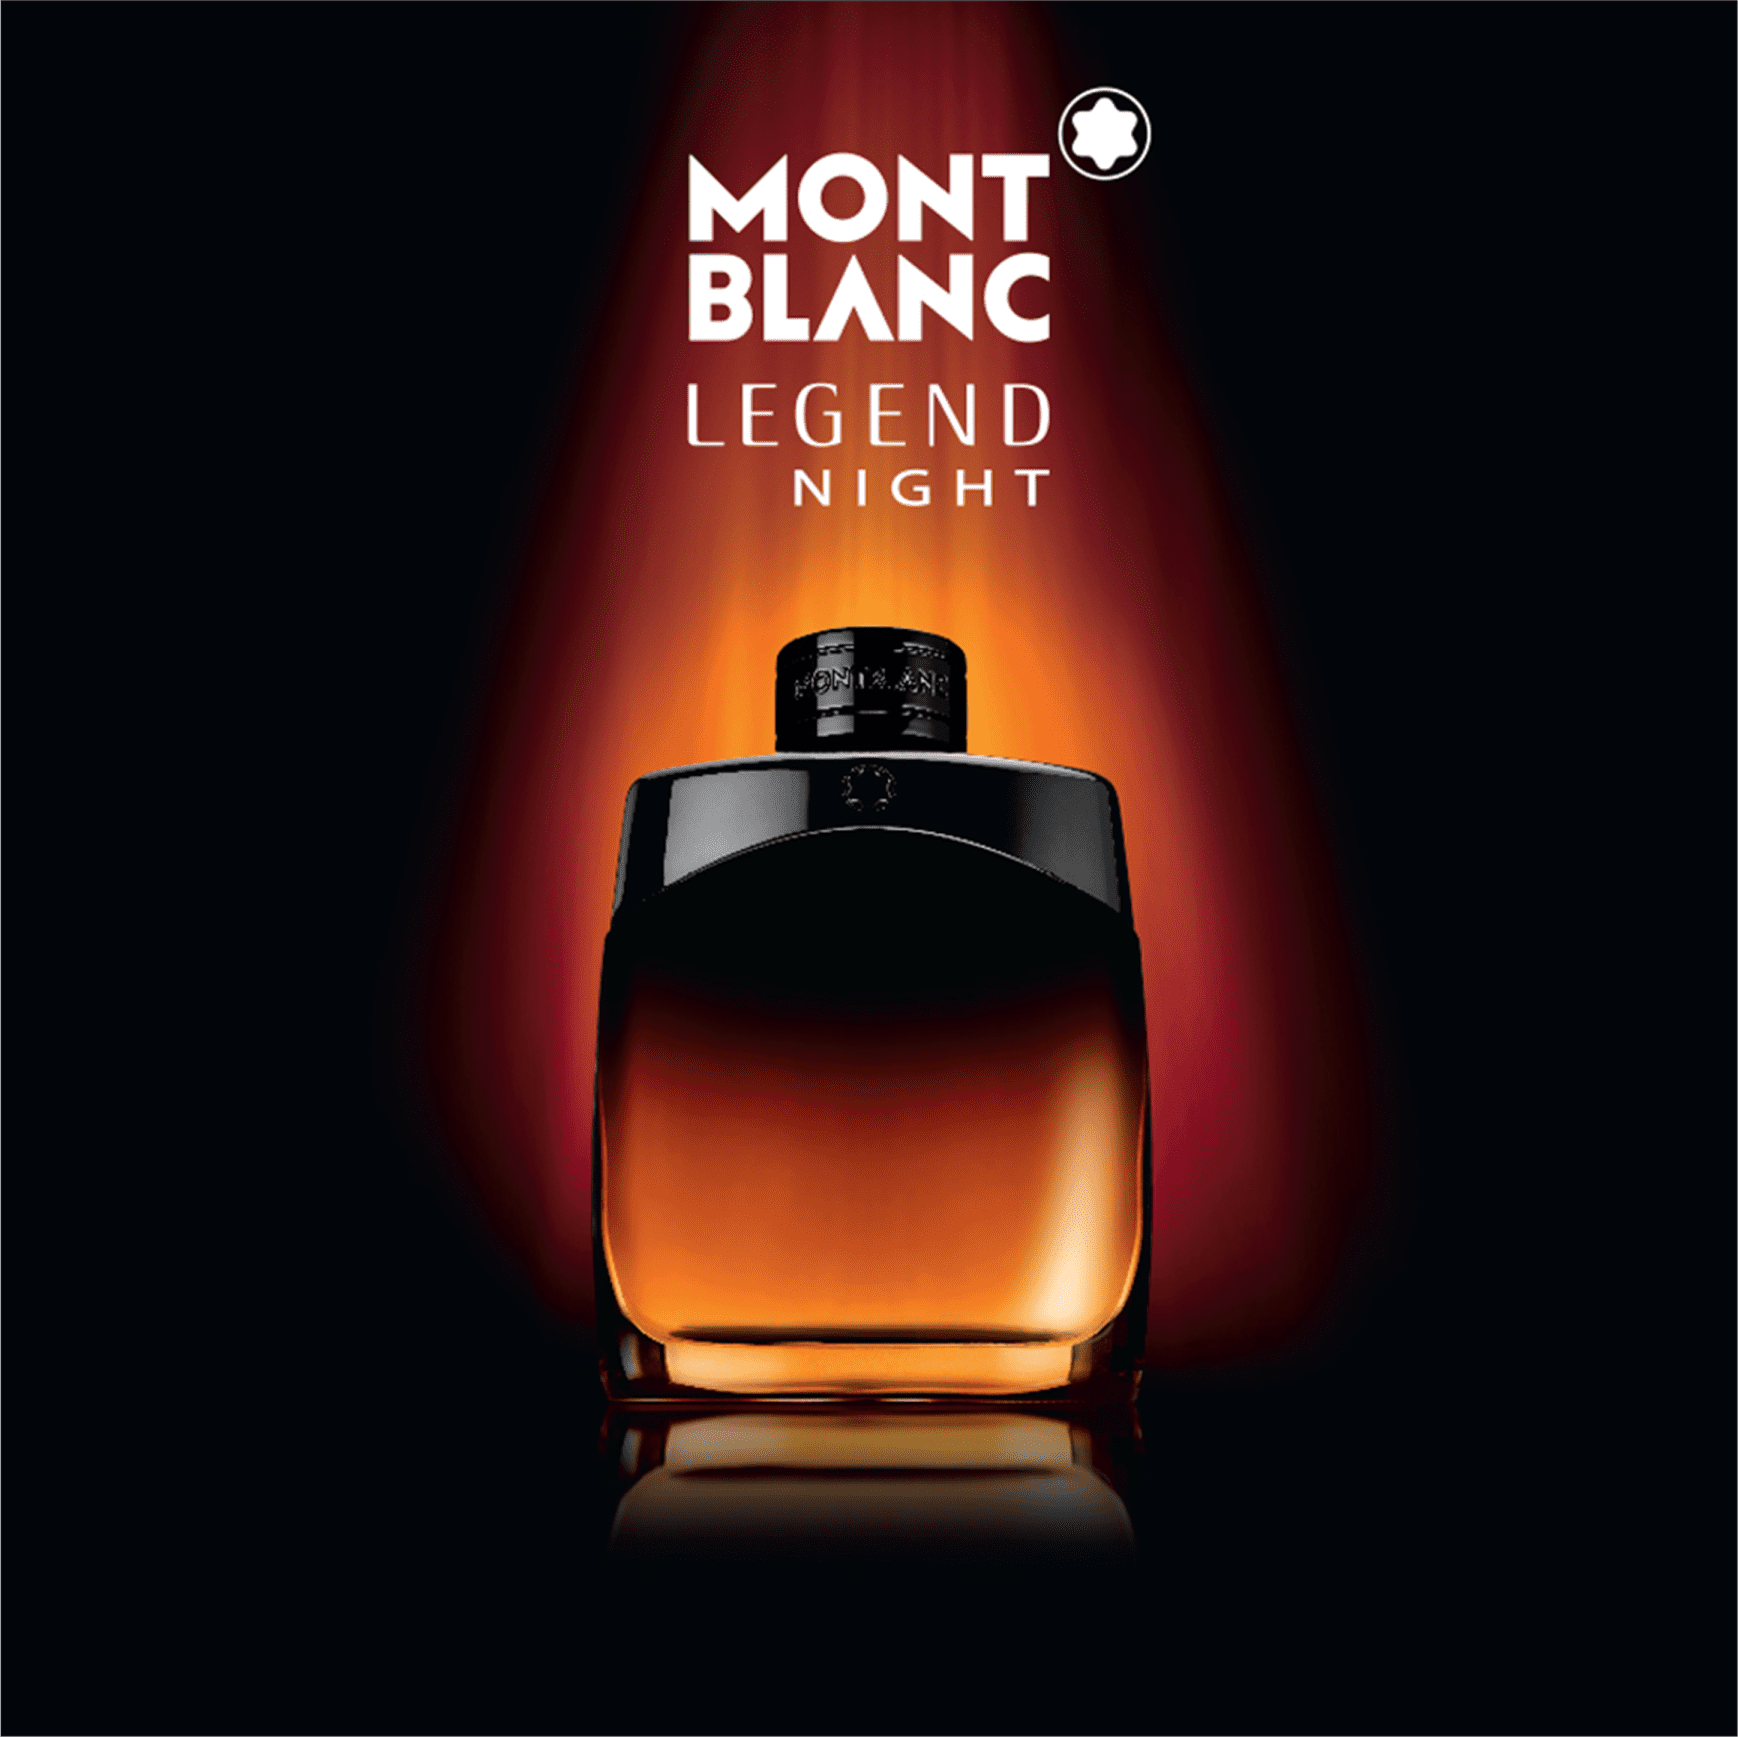 Mont Blanc Legend Night EDP กลิ่นหอมที่ช่วยเสริมเสน่ห์ให้คุณผู้ชาย กลิ่นที่ชวนลุ่มหลง หอมนุ่มลึกในแบบผู้ชายน่าค้นหา สร้างภวังค์แห่งความหอมดังต้องมนตร์สะกด